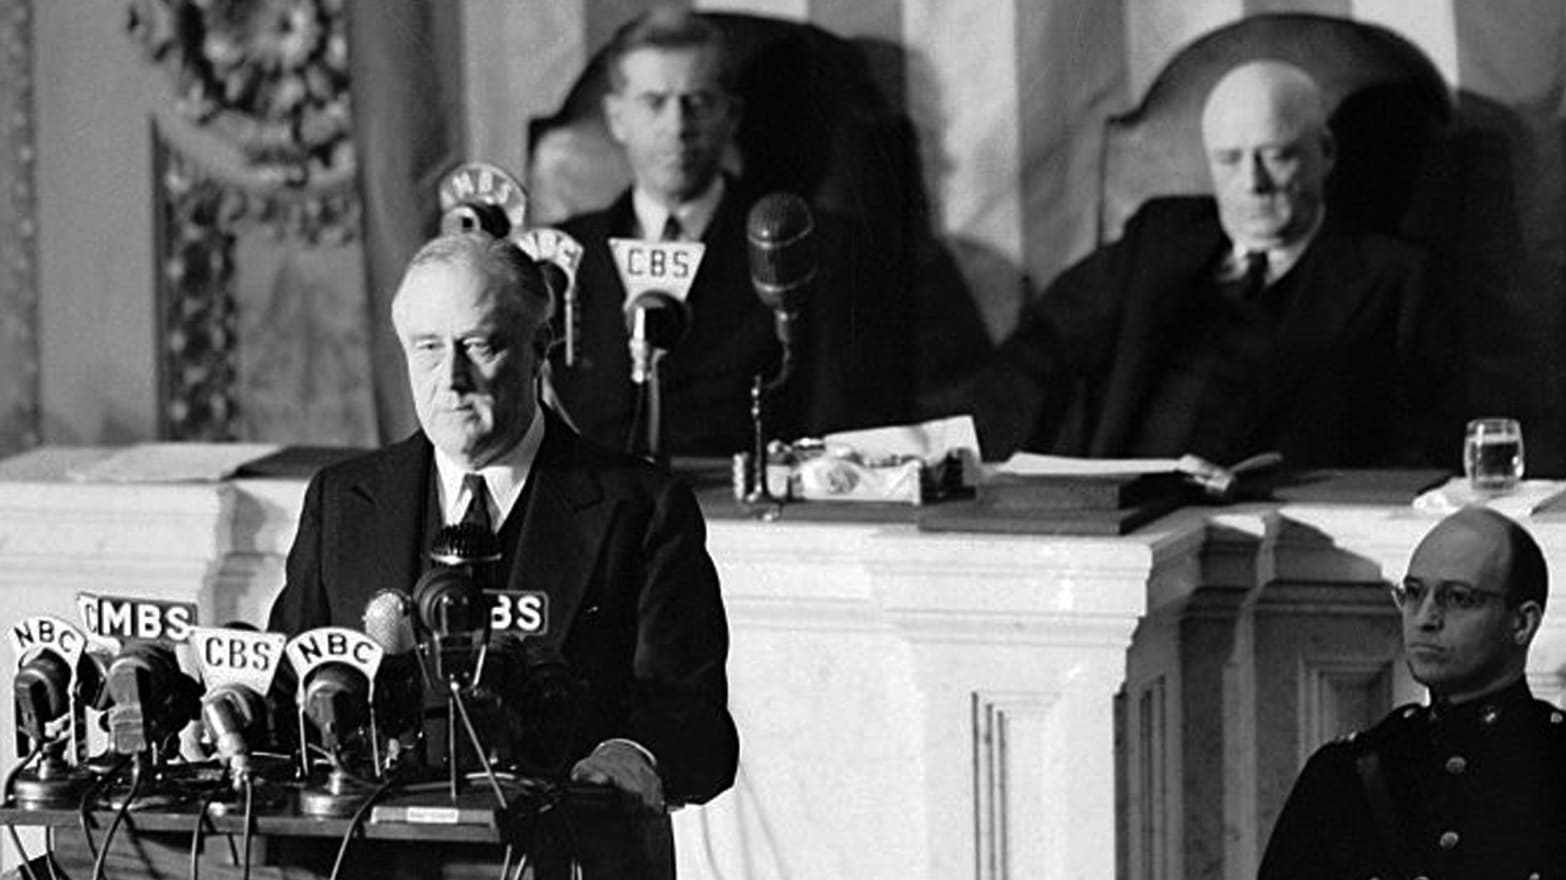 speech on 1965 war